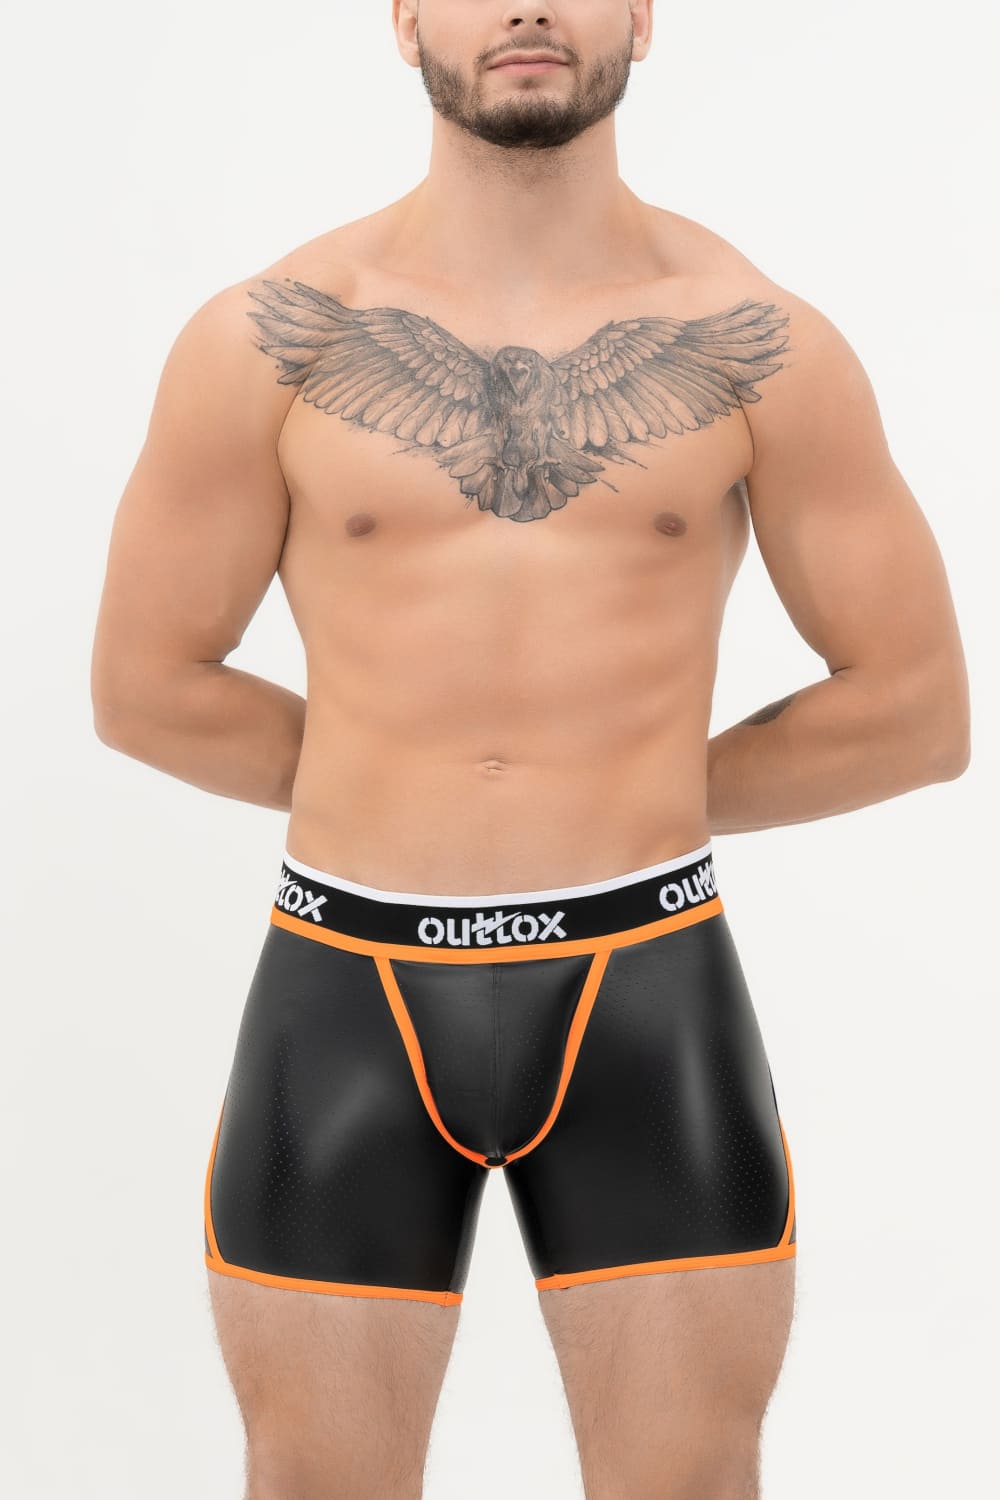 Outtox. Shorts mit offenem Rücken und Druckknopf. Schwarz+Orange